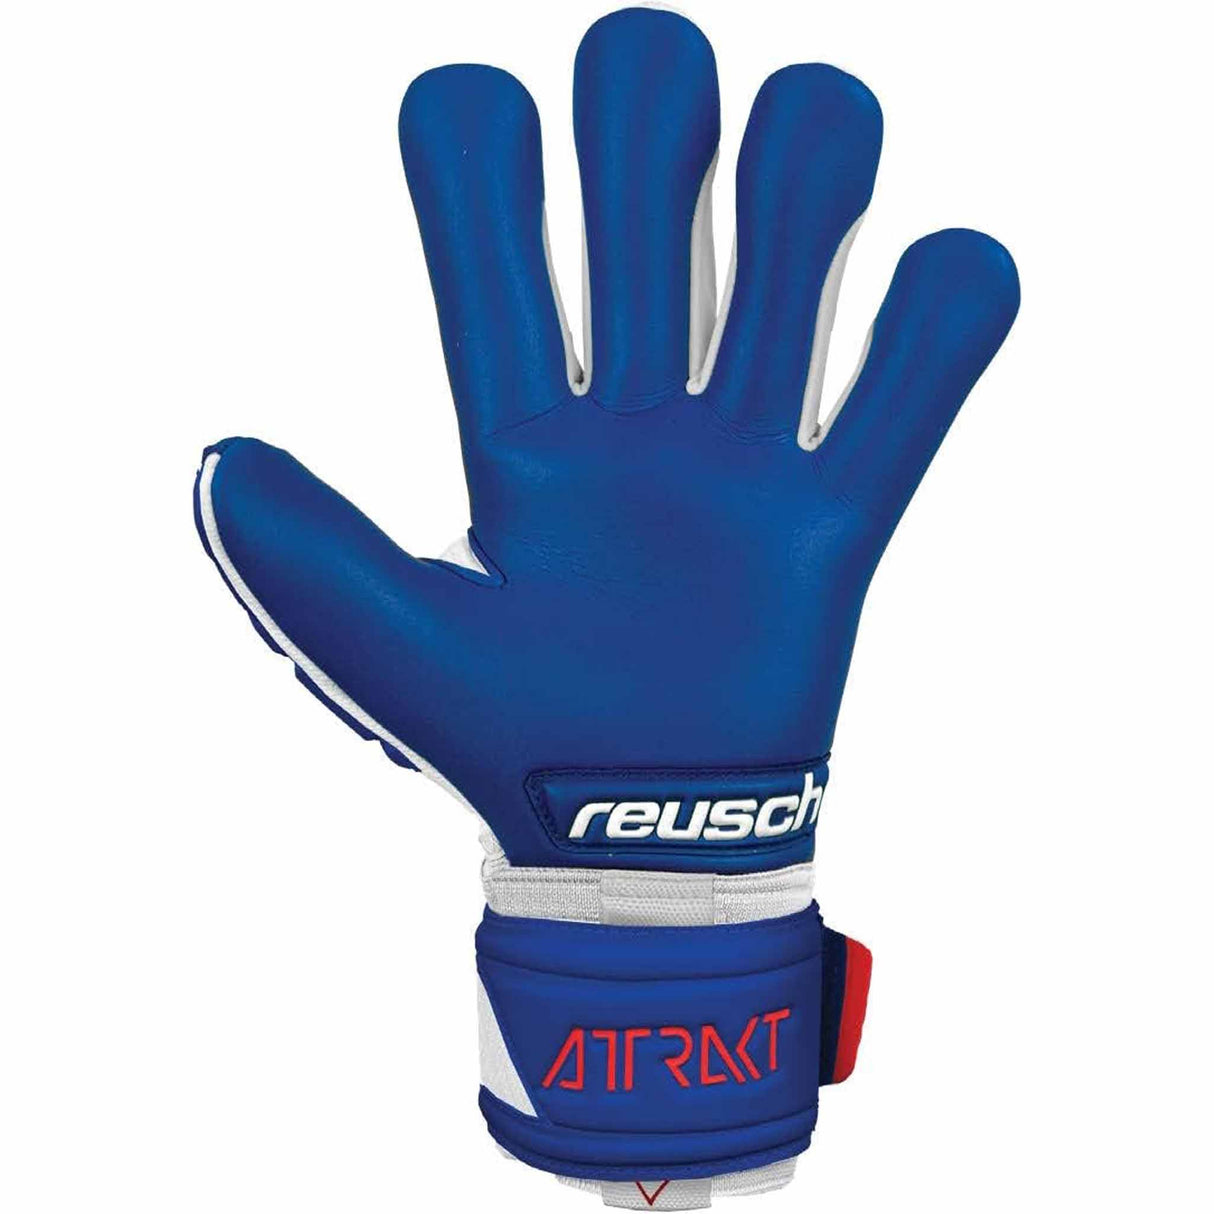 Reusch Attrakt Freegel Gold Sleek Finger Support gants de gardien de soccer - Blanc / Bleu